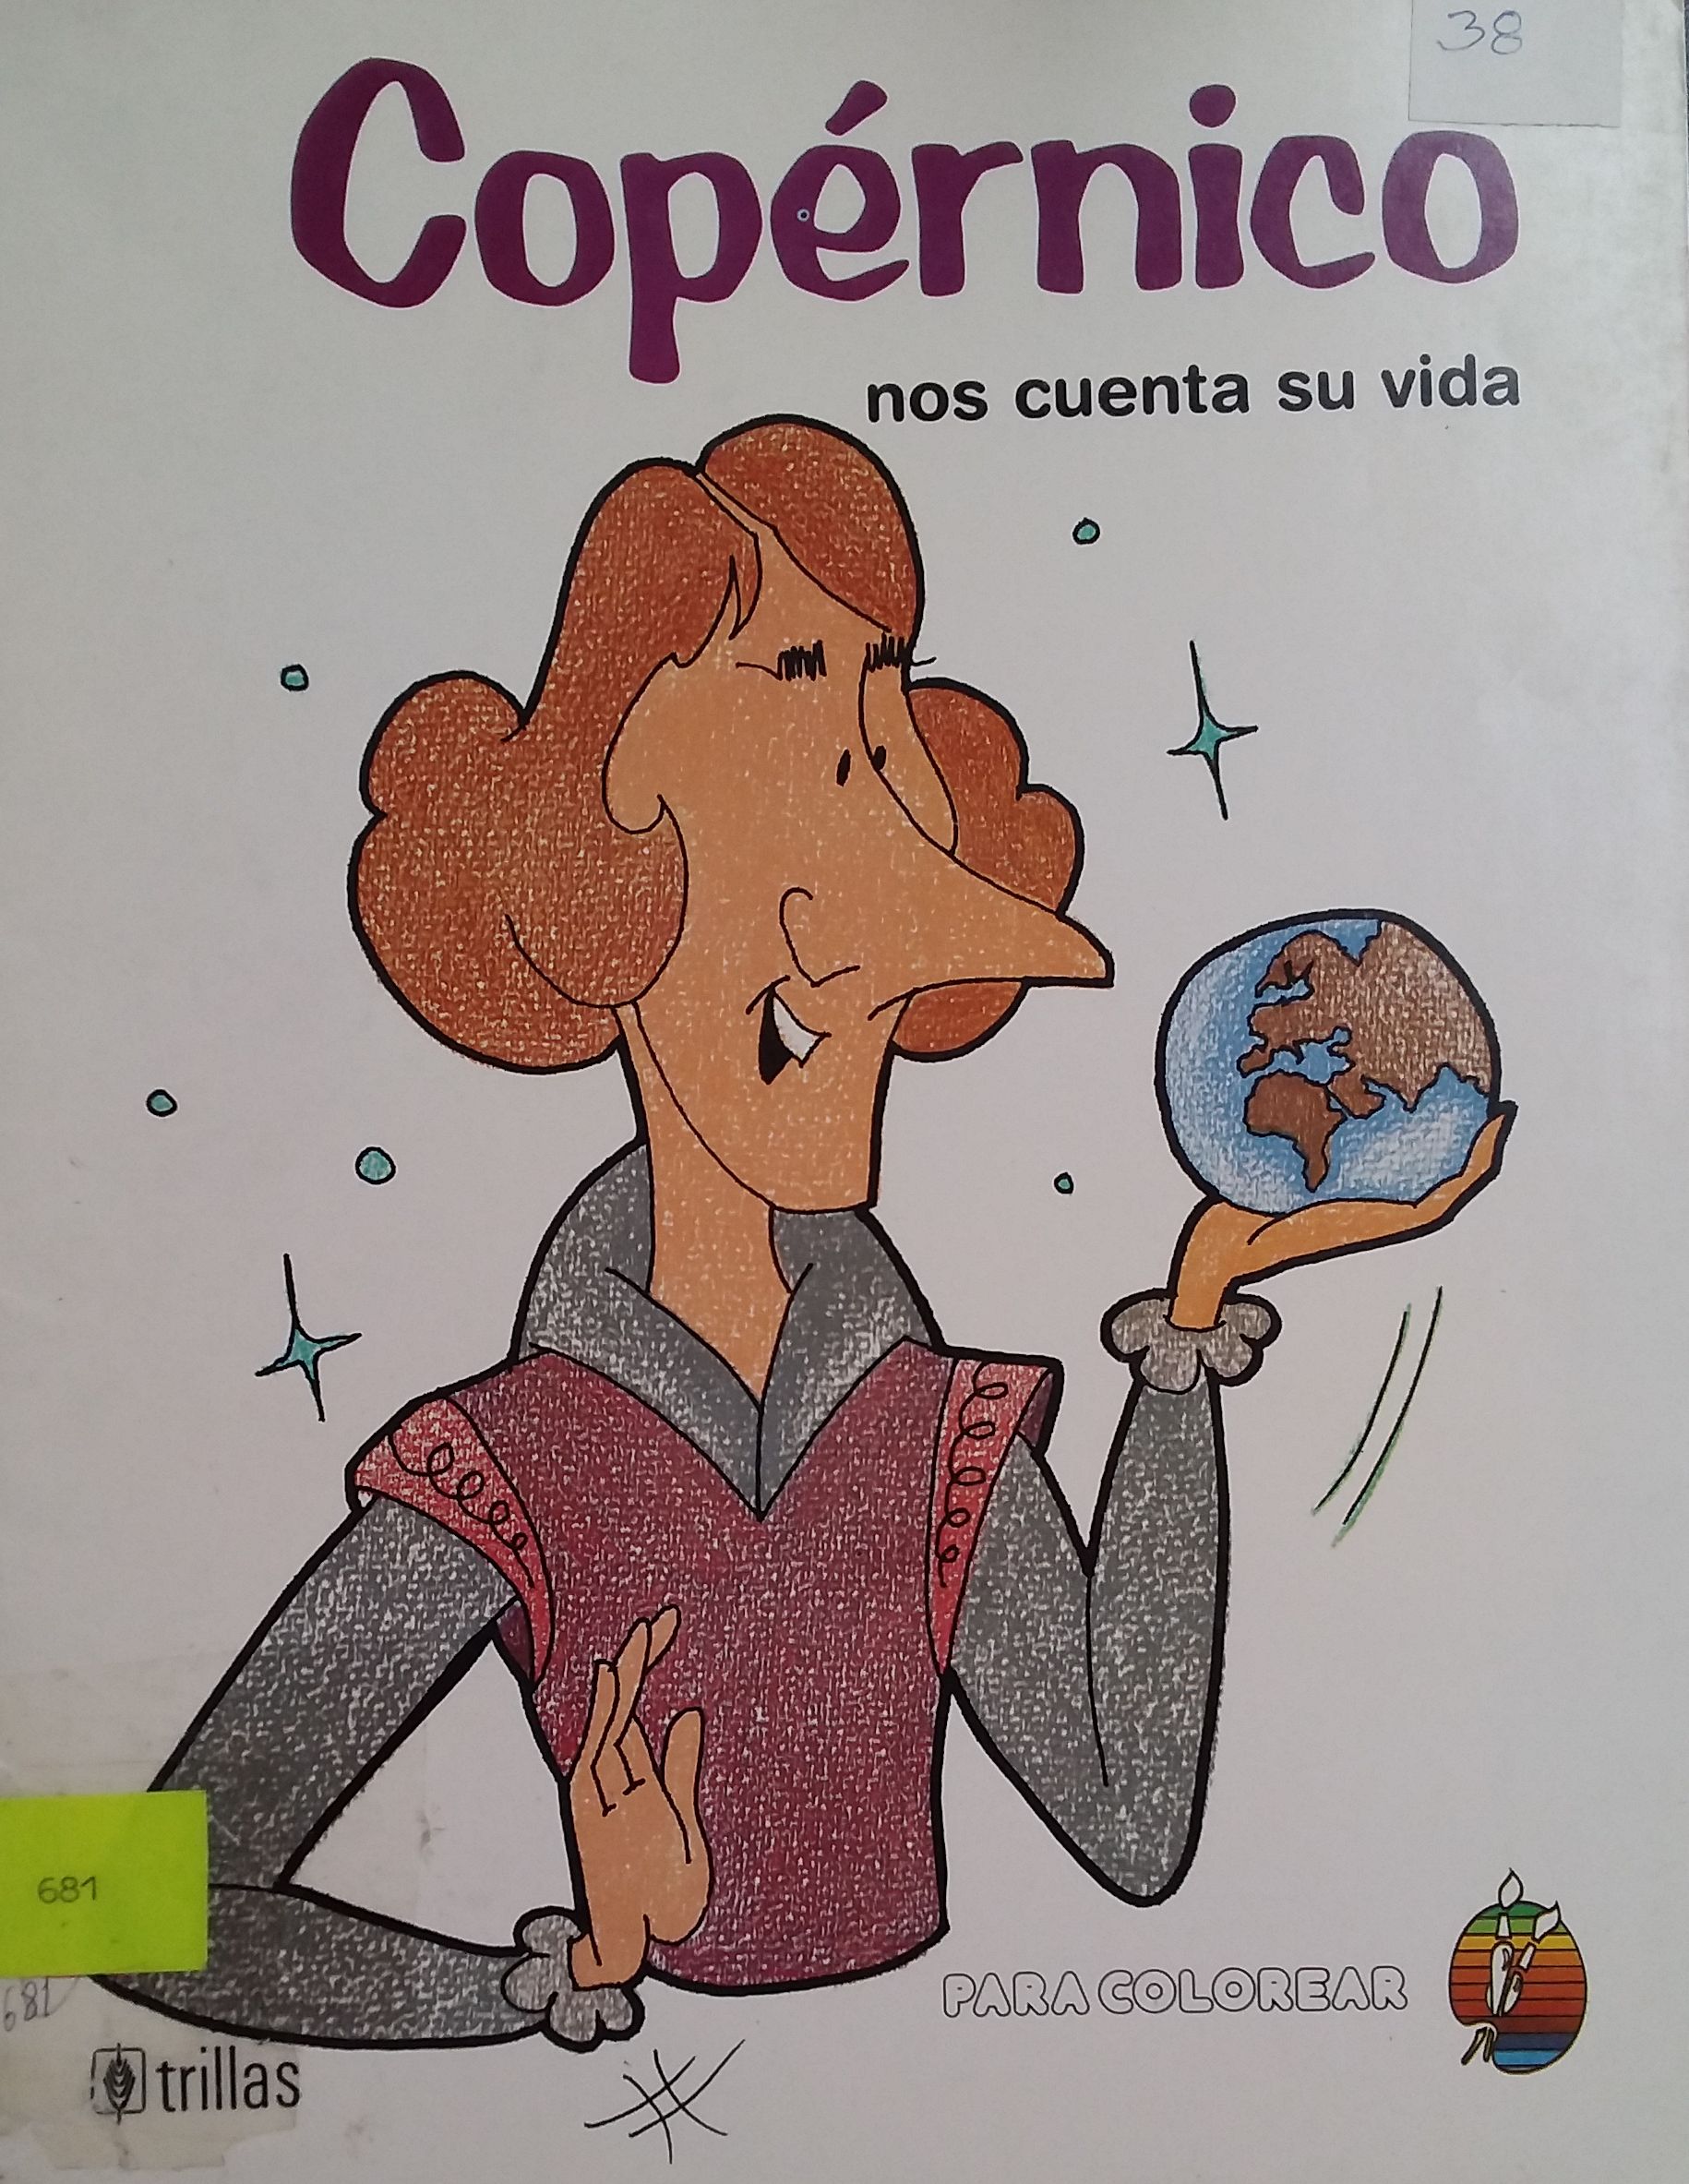 Copernico nos cuenta su vida